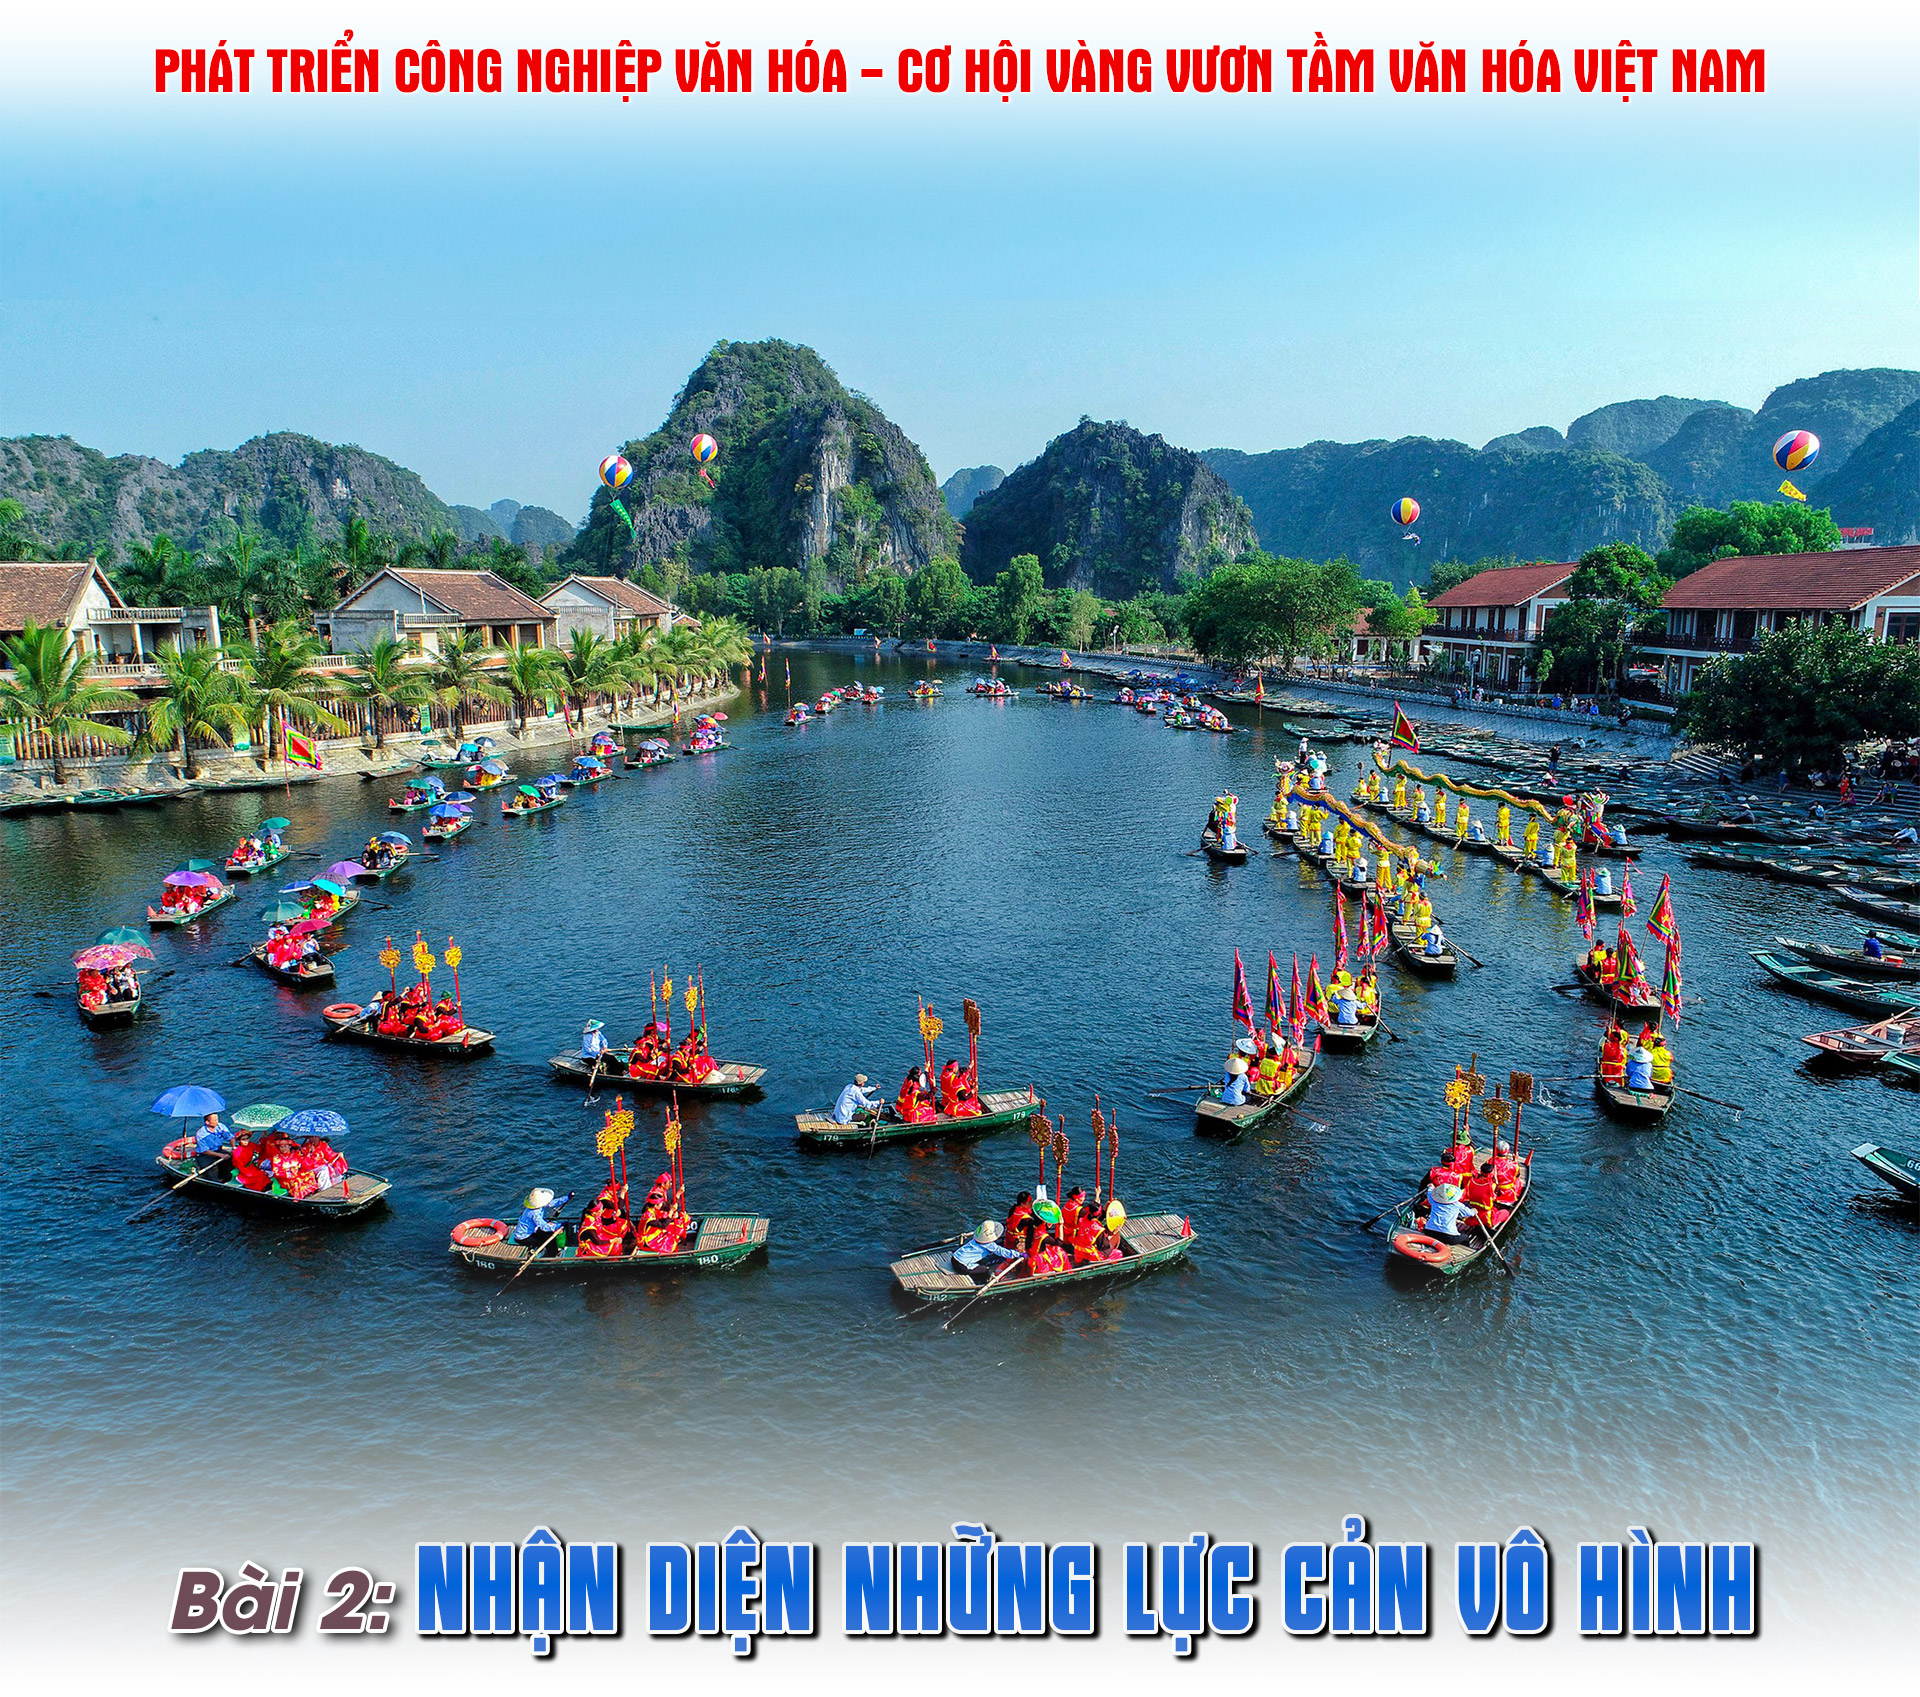 Phát triển công nghiệp văn hóa - Cơ hội vàng vươn tầm văn hóa Việt Nam (Bài 2)